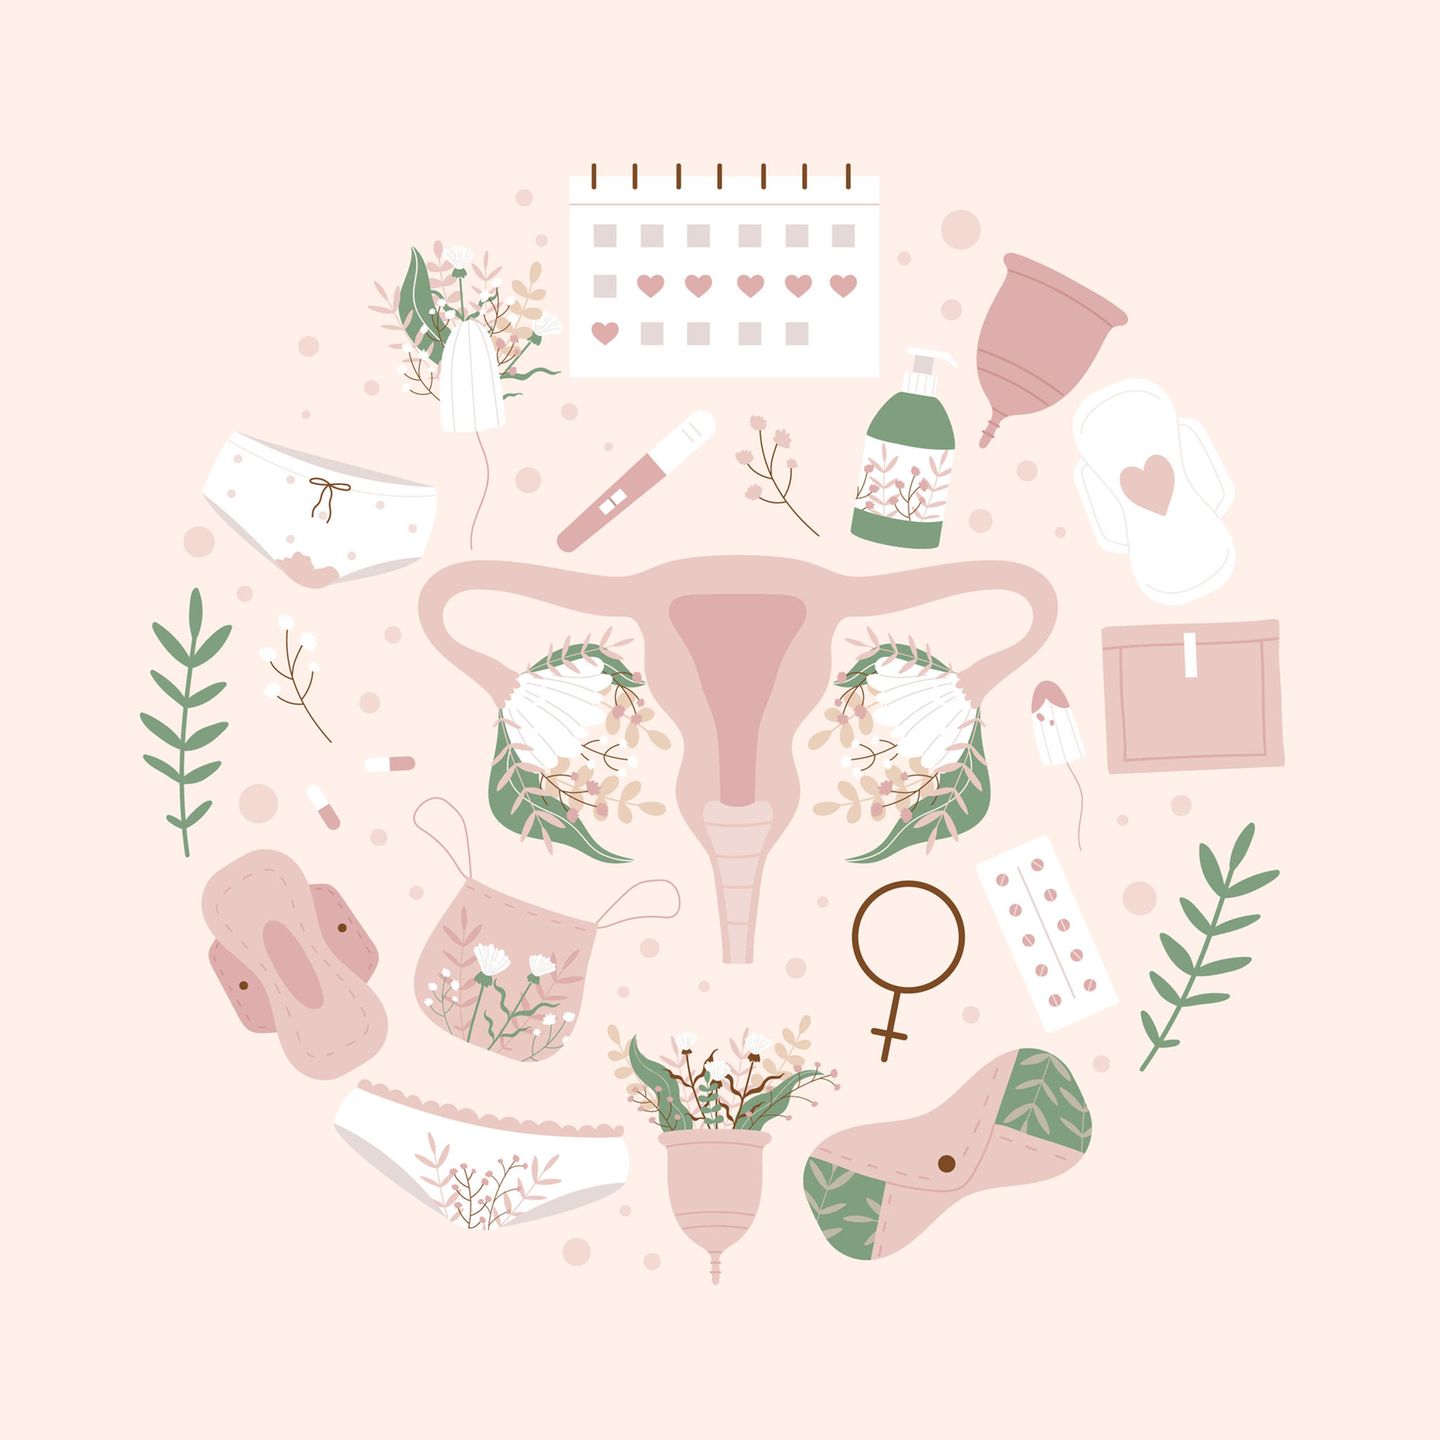 Zeichnung von Periodenprodukten und typischen Symbolen, die zur Erklärung der Menstruation dienen